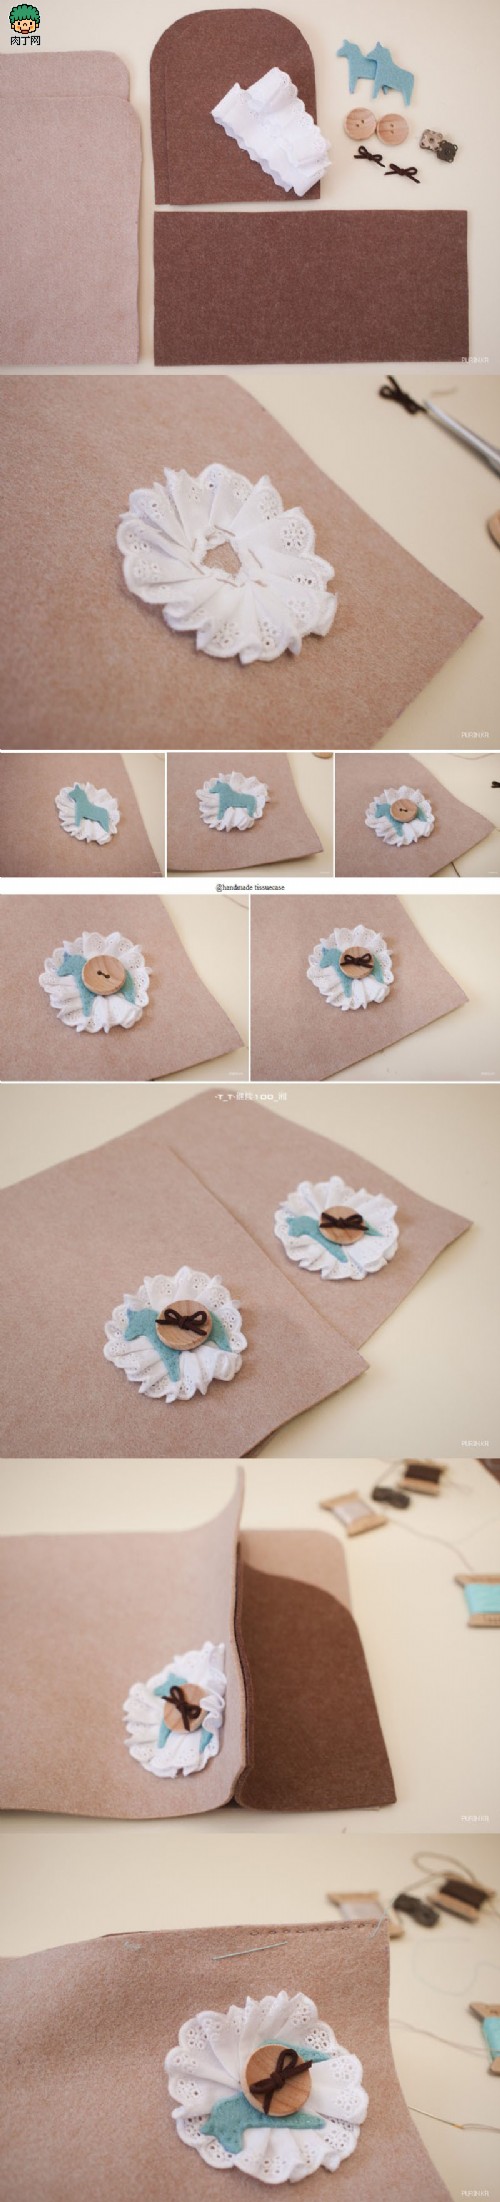 教你用皮革或不织布面料DIY自制纸巾盒